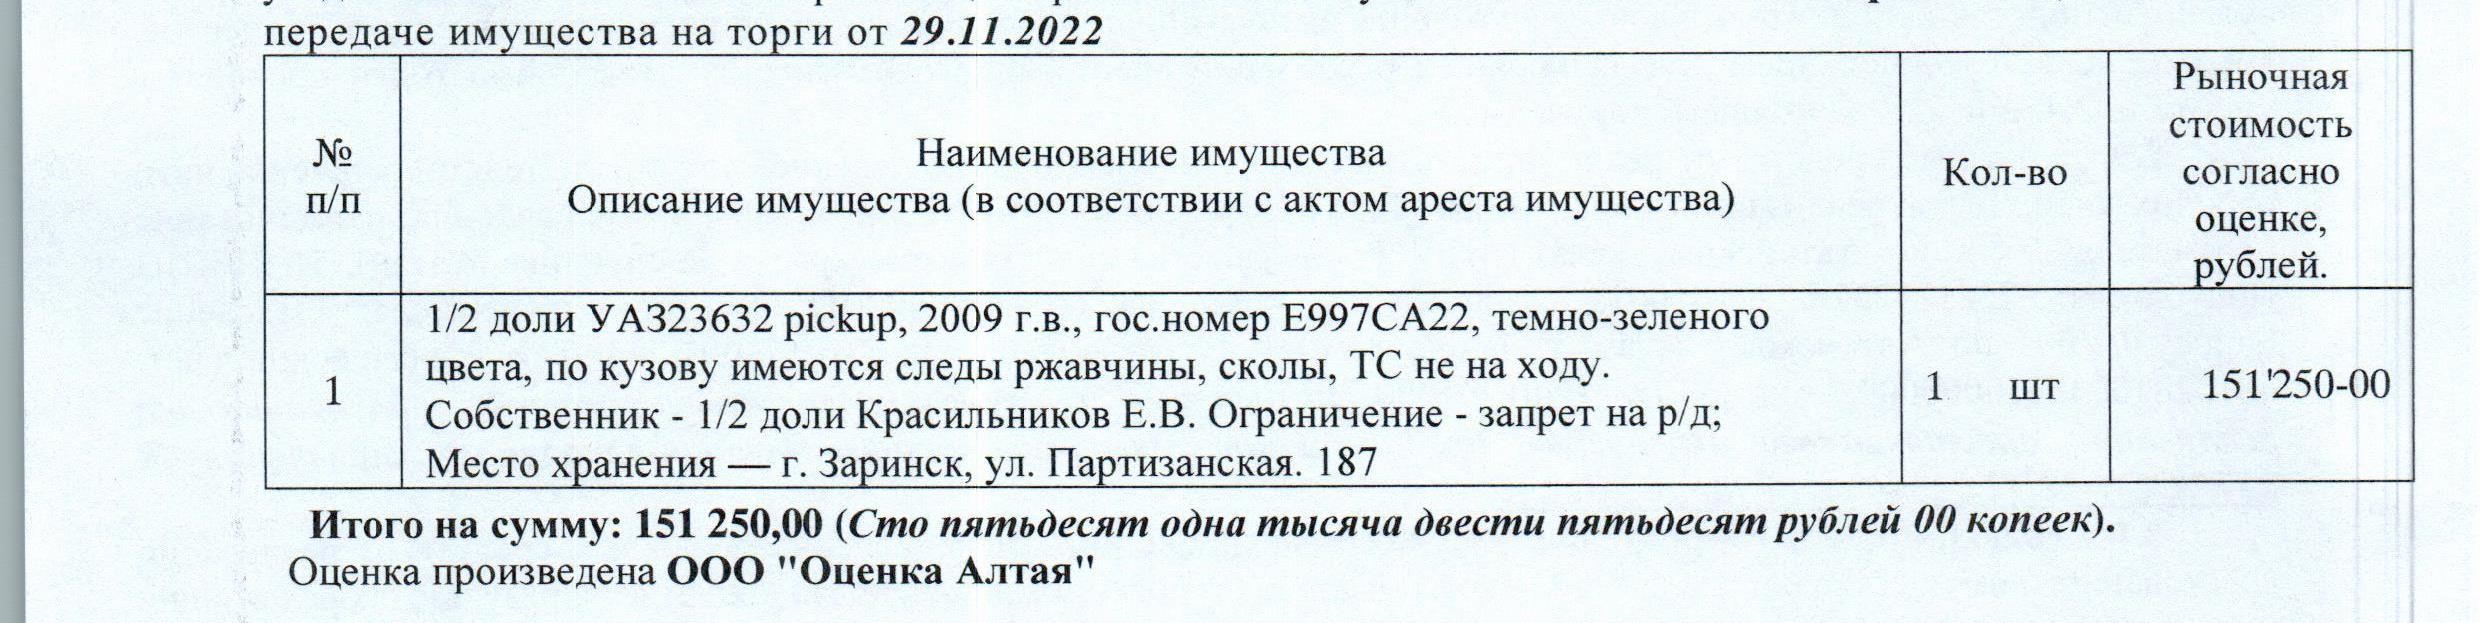 Лот№8 1/2 доля в праве собственности на автомобиль УАЗ23632 pickup, 2009 г.в., г/н Е997СА22, цвет: т